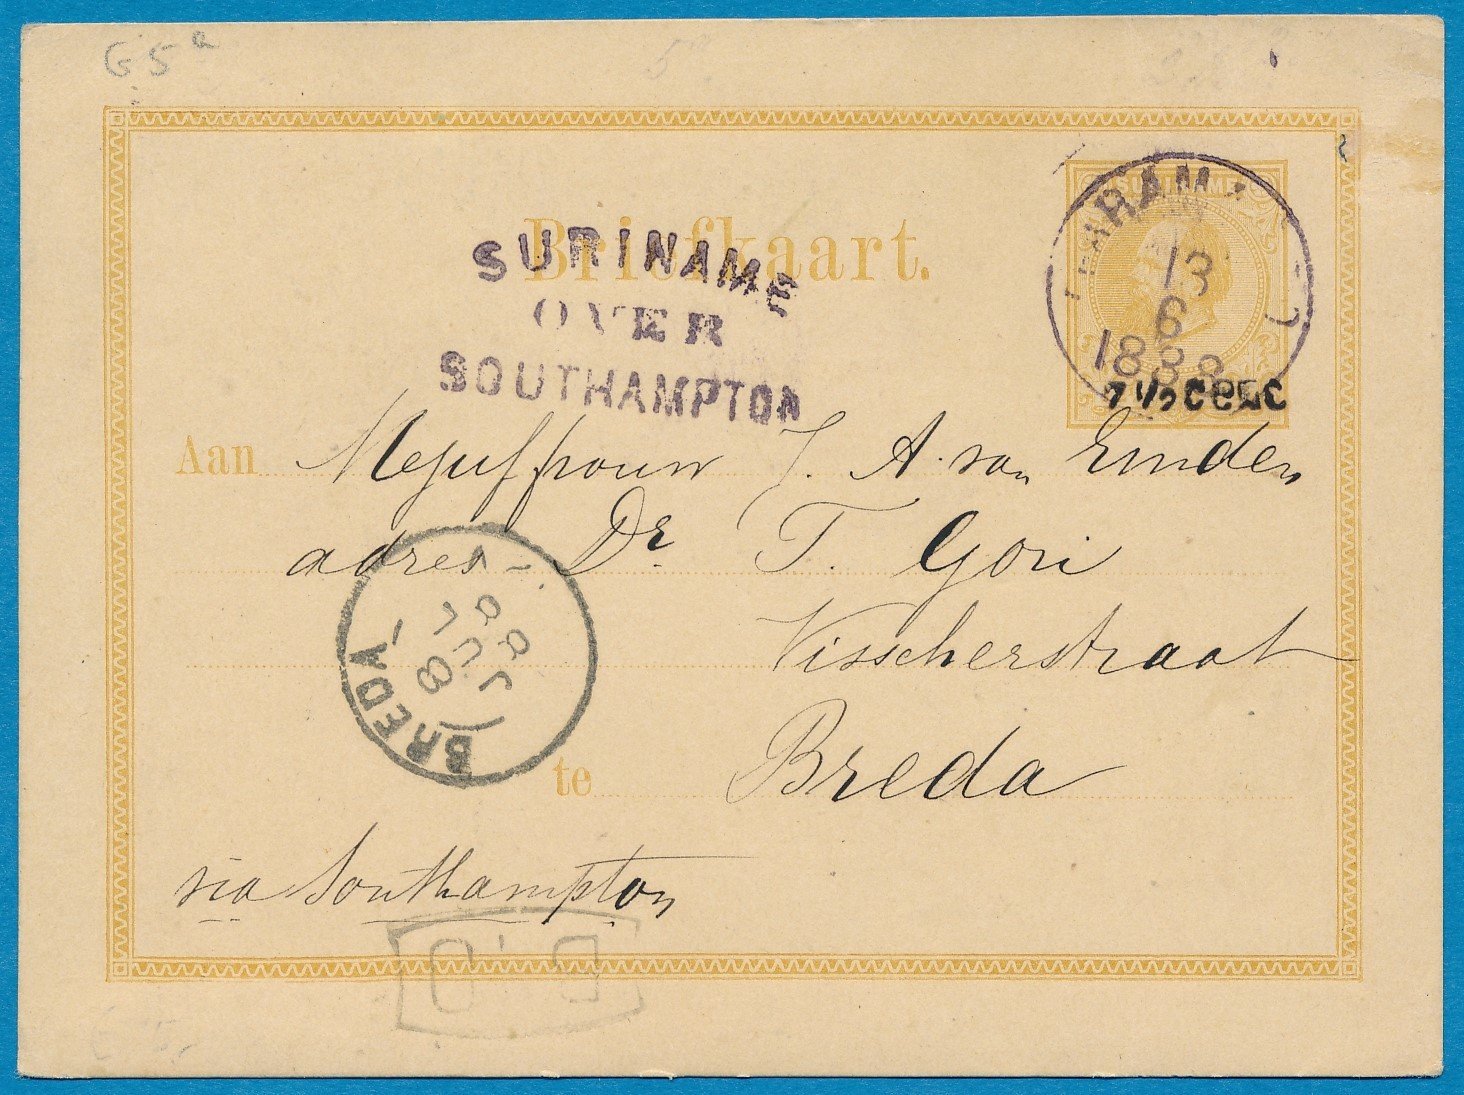 SURINAME briefkaart 1888 Paramaribo naar Breda